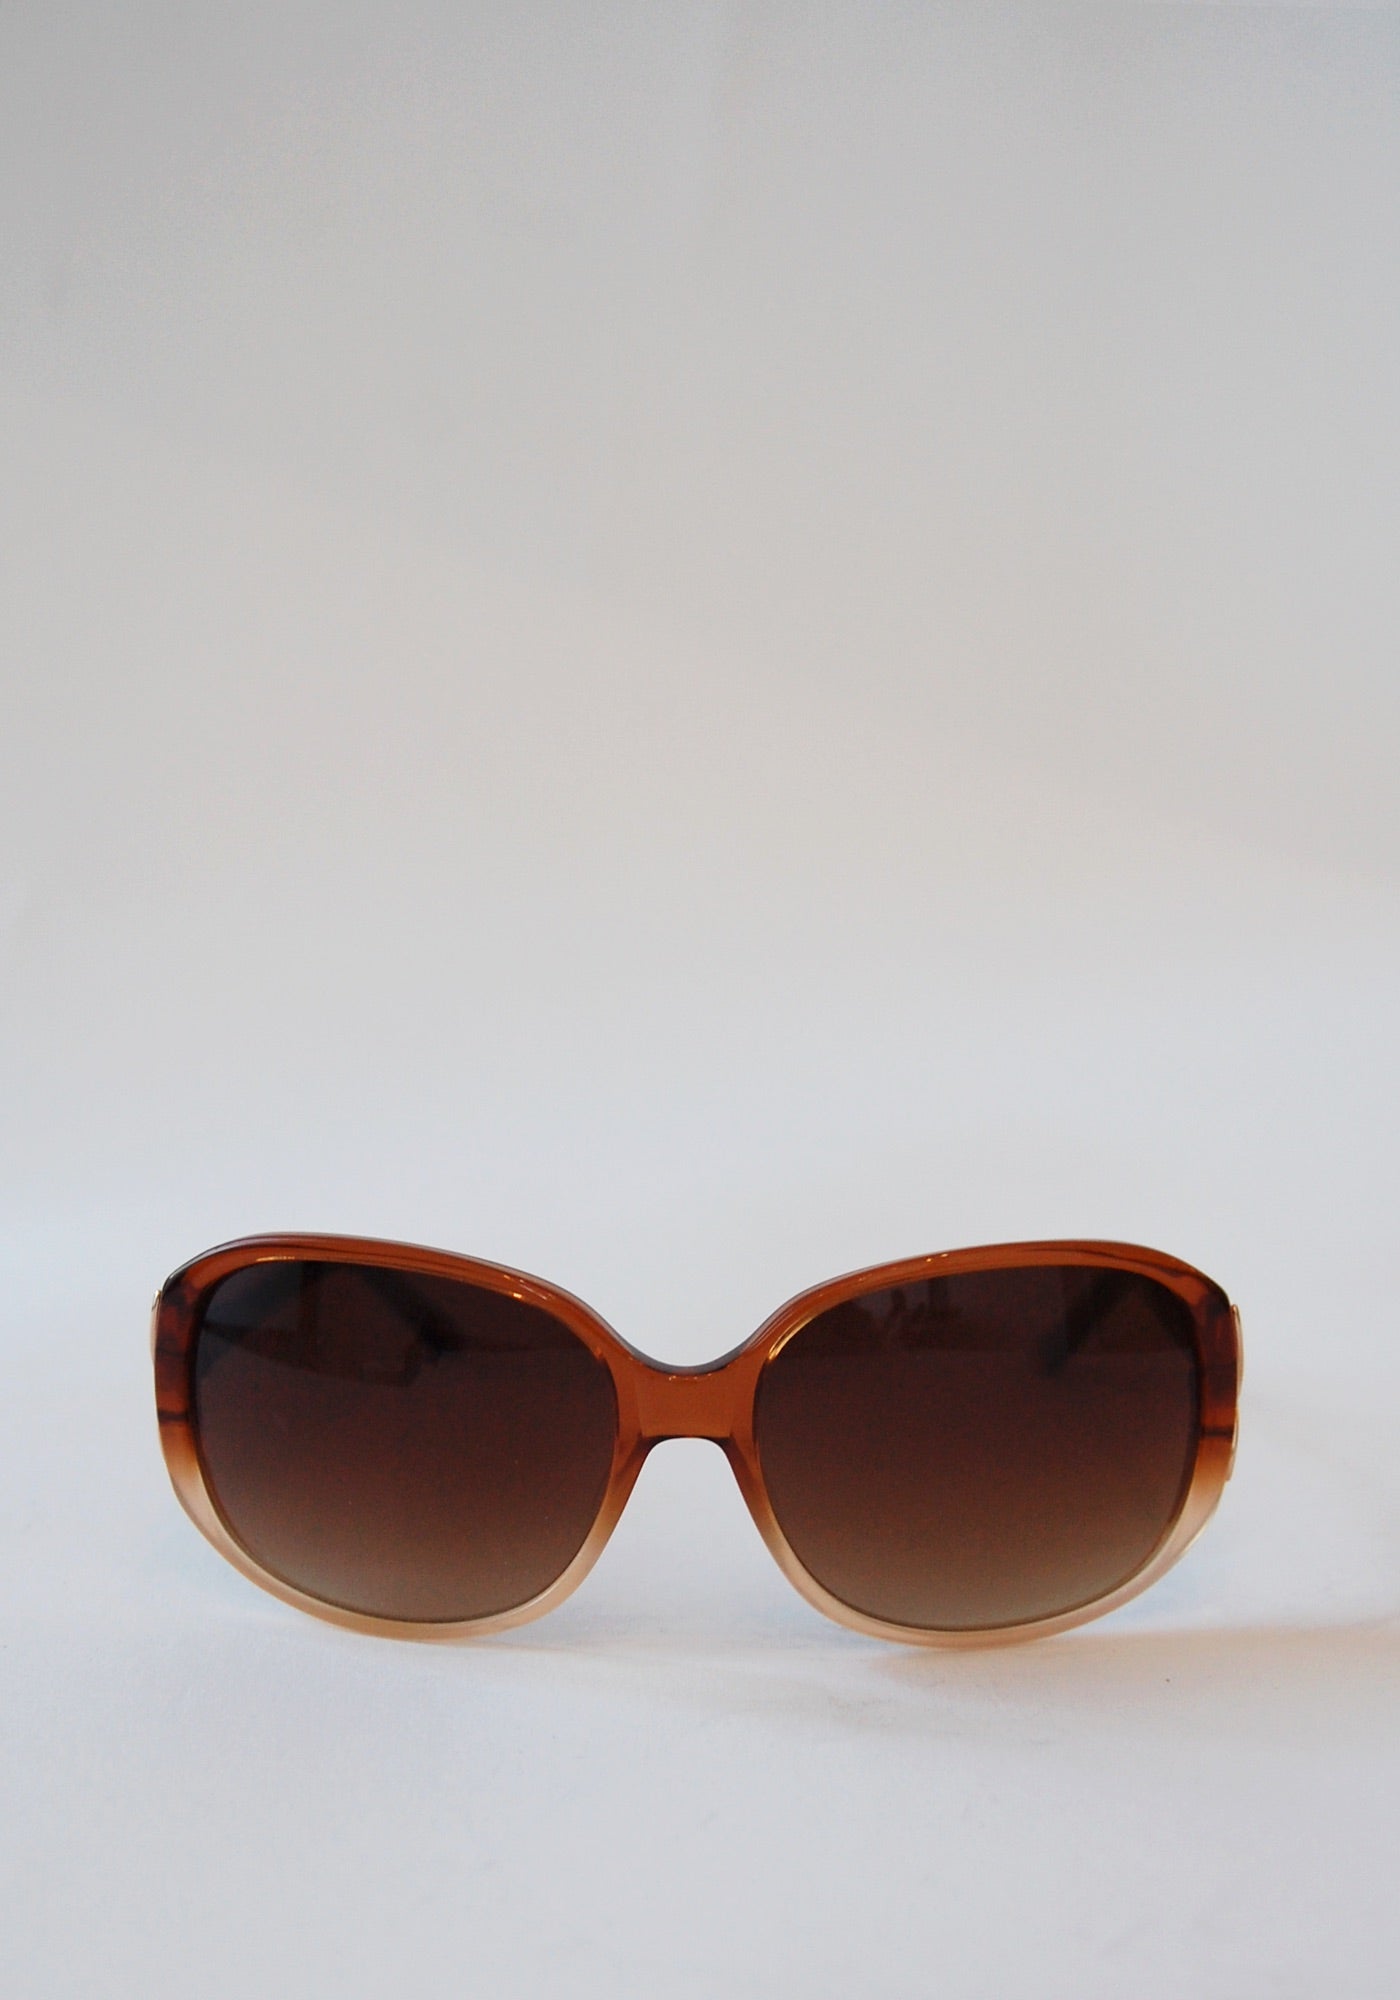 BCBG Maxazria Round Sunglasses